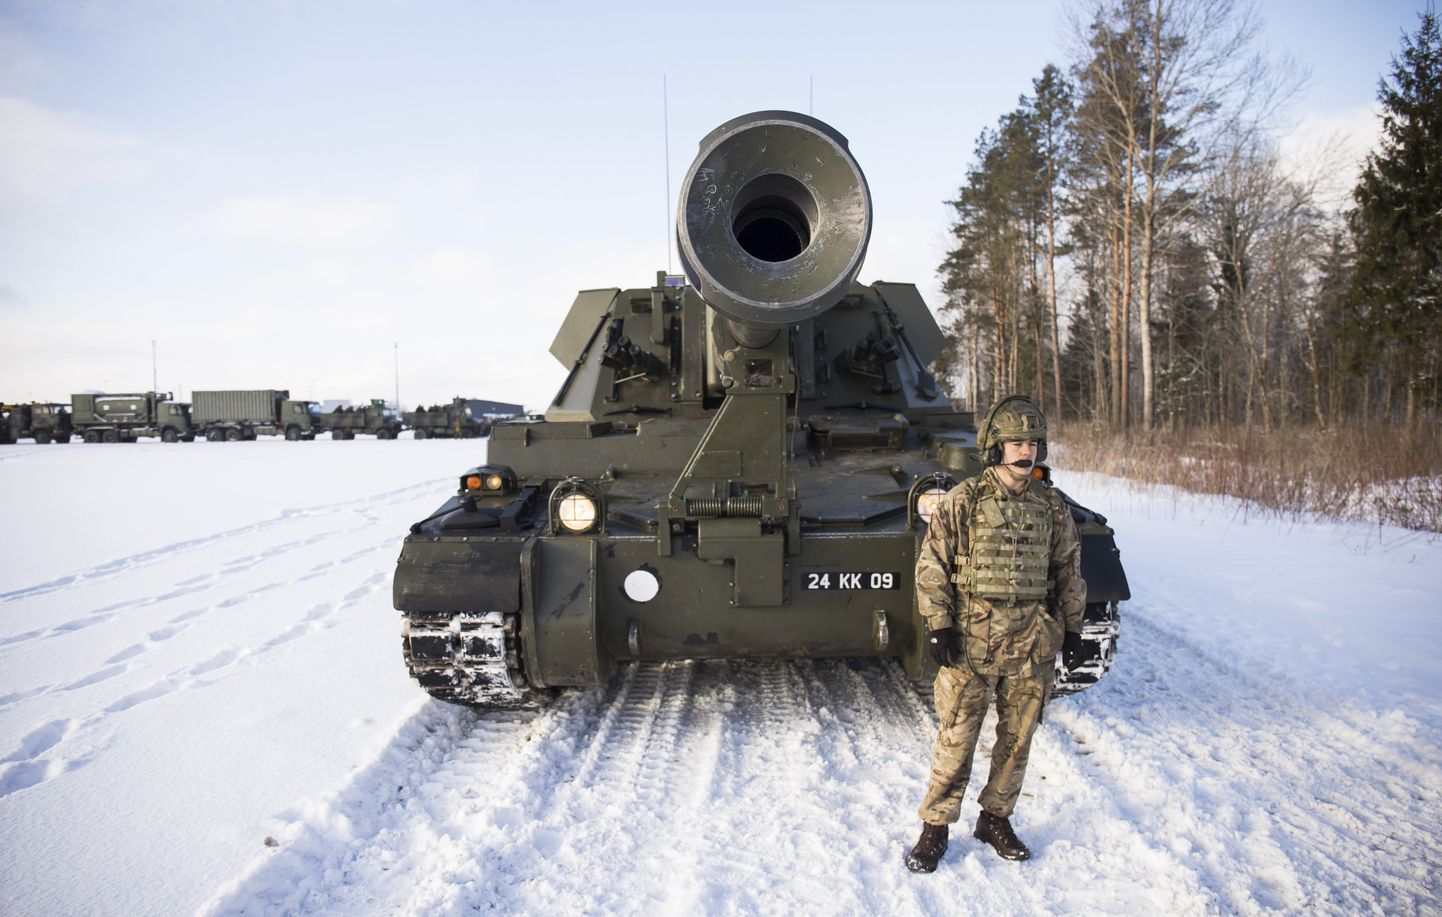 Riigi juubeliparaadil Tallinnas näeb teiste sõjamasinate hulgas maailma raskeimat tanki, üle 60 tonni kaaluvat brittide Challengeri.